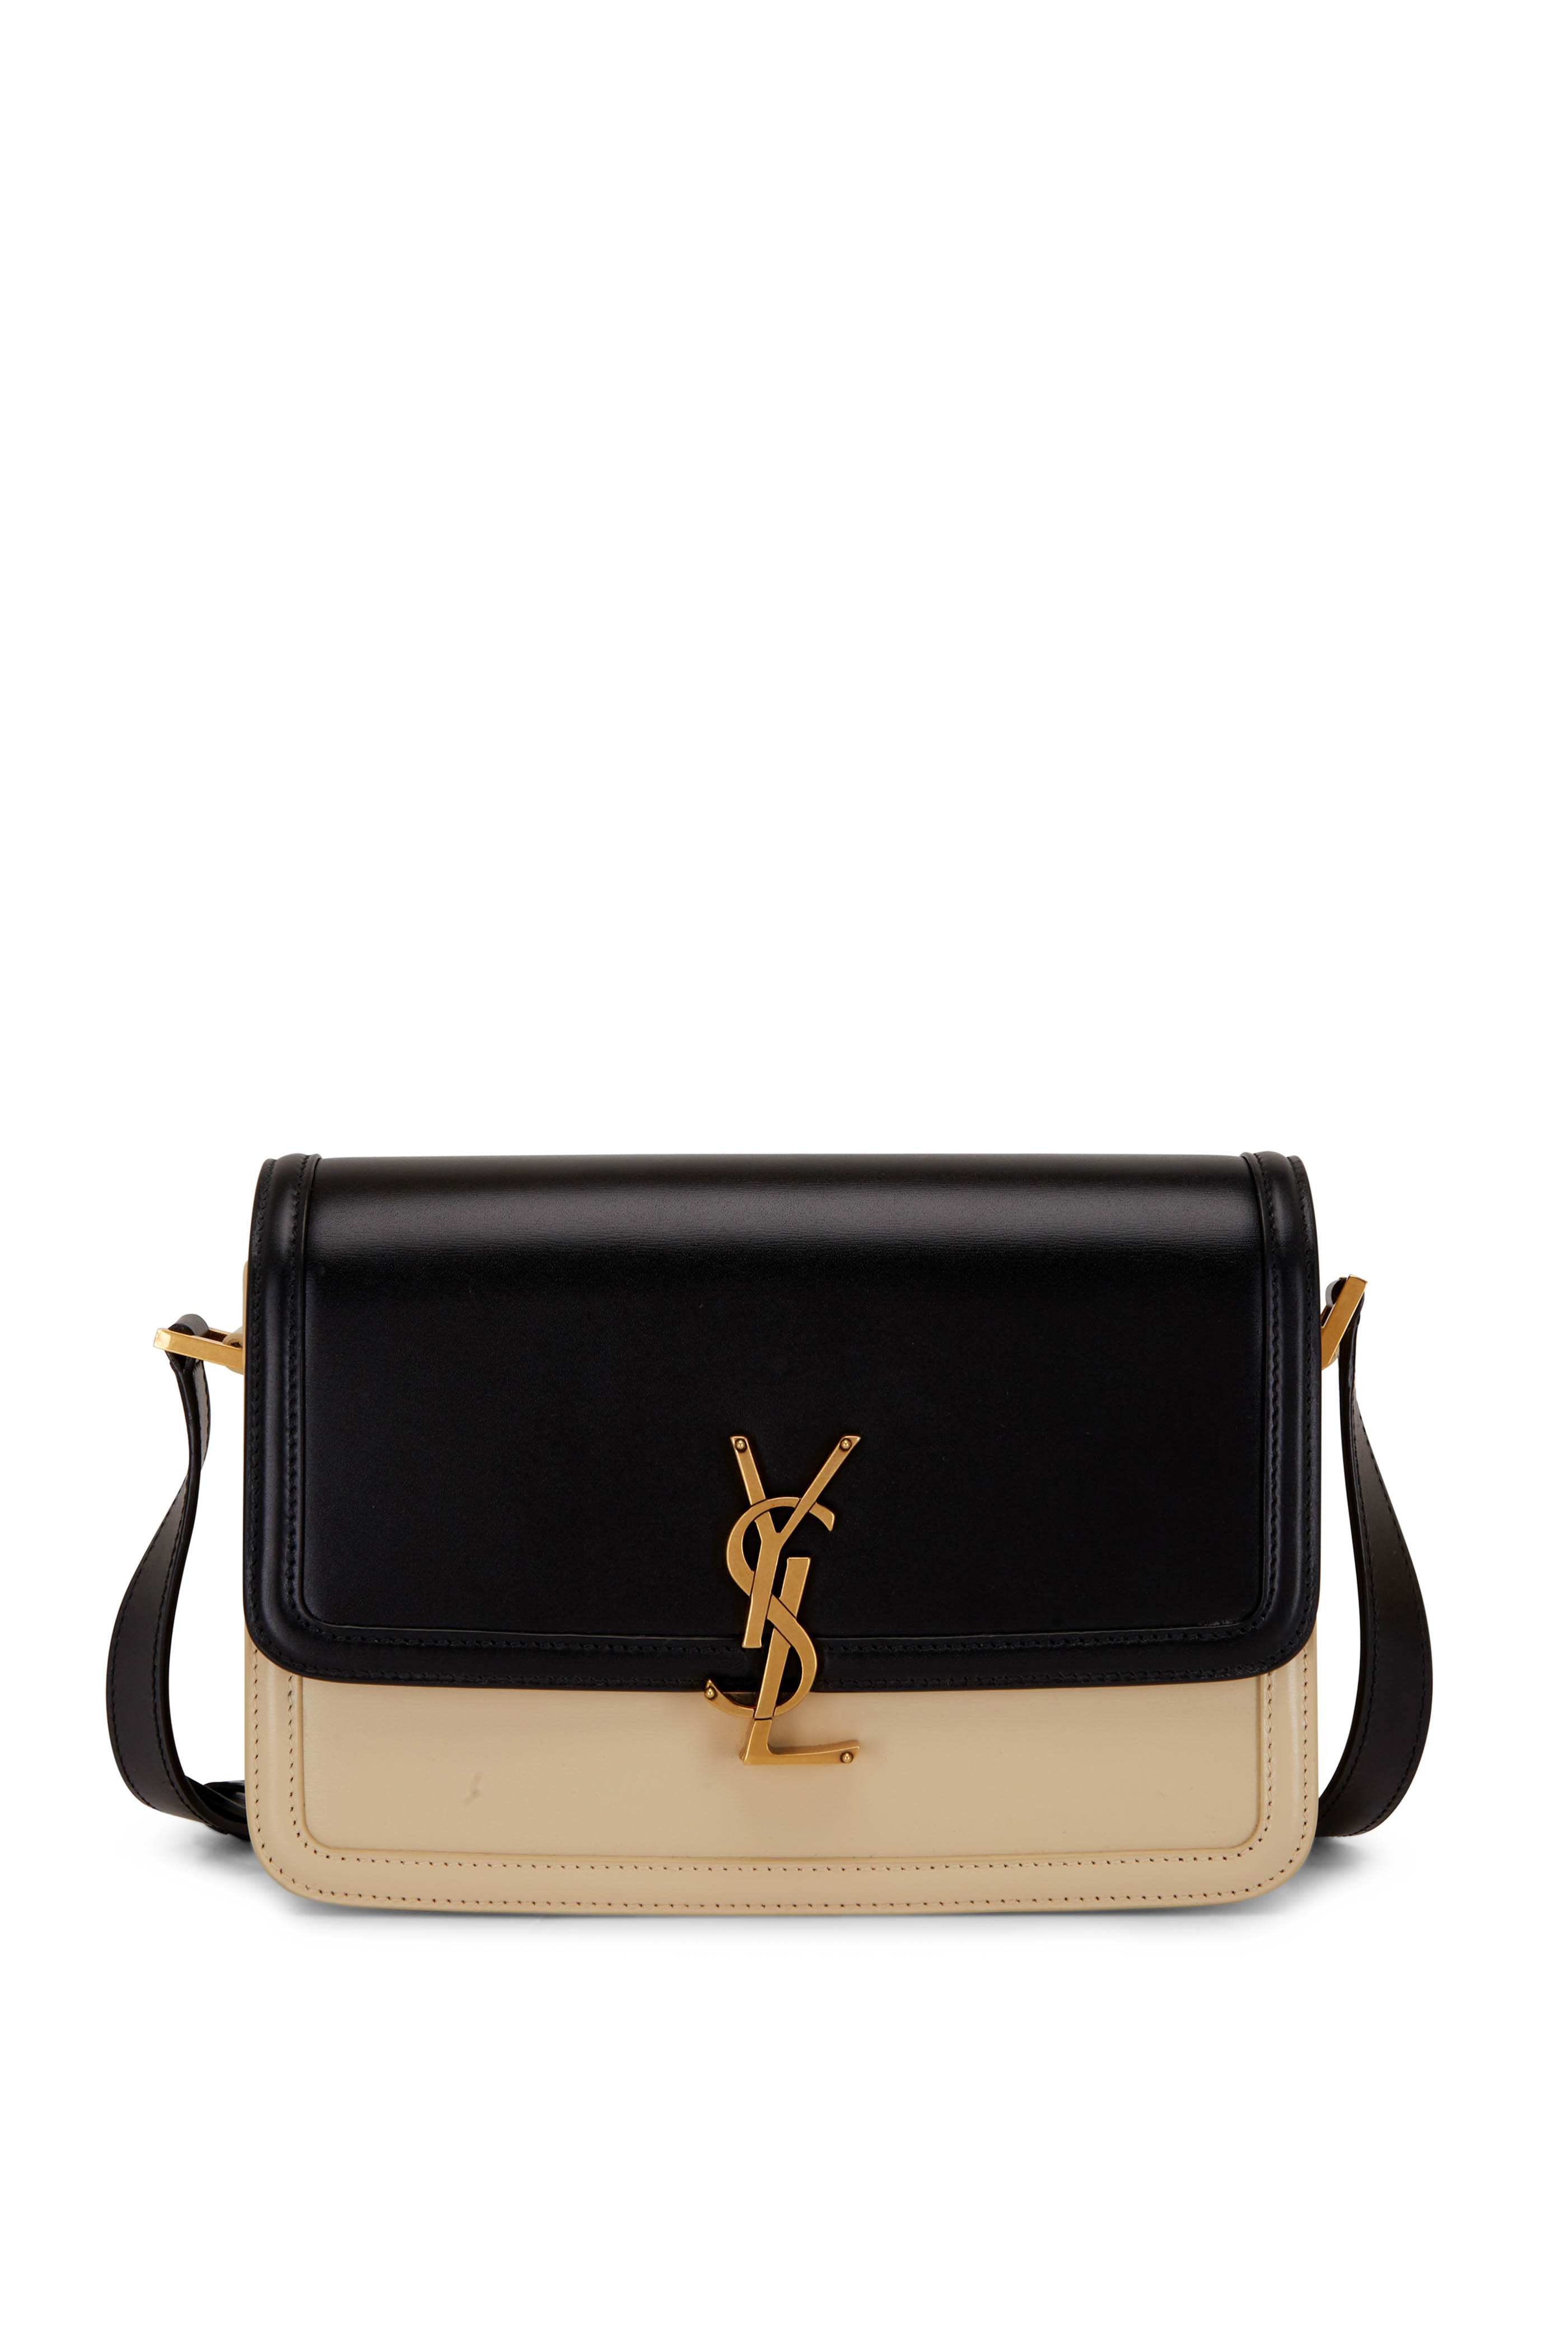 Manhattan leather handbag Louis Vuitton Beige in Leather - 38657285